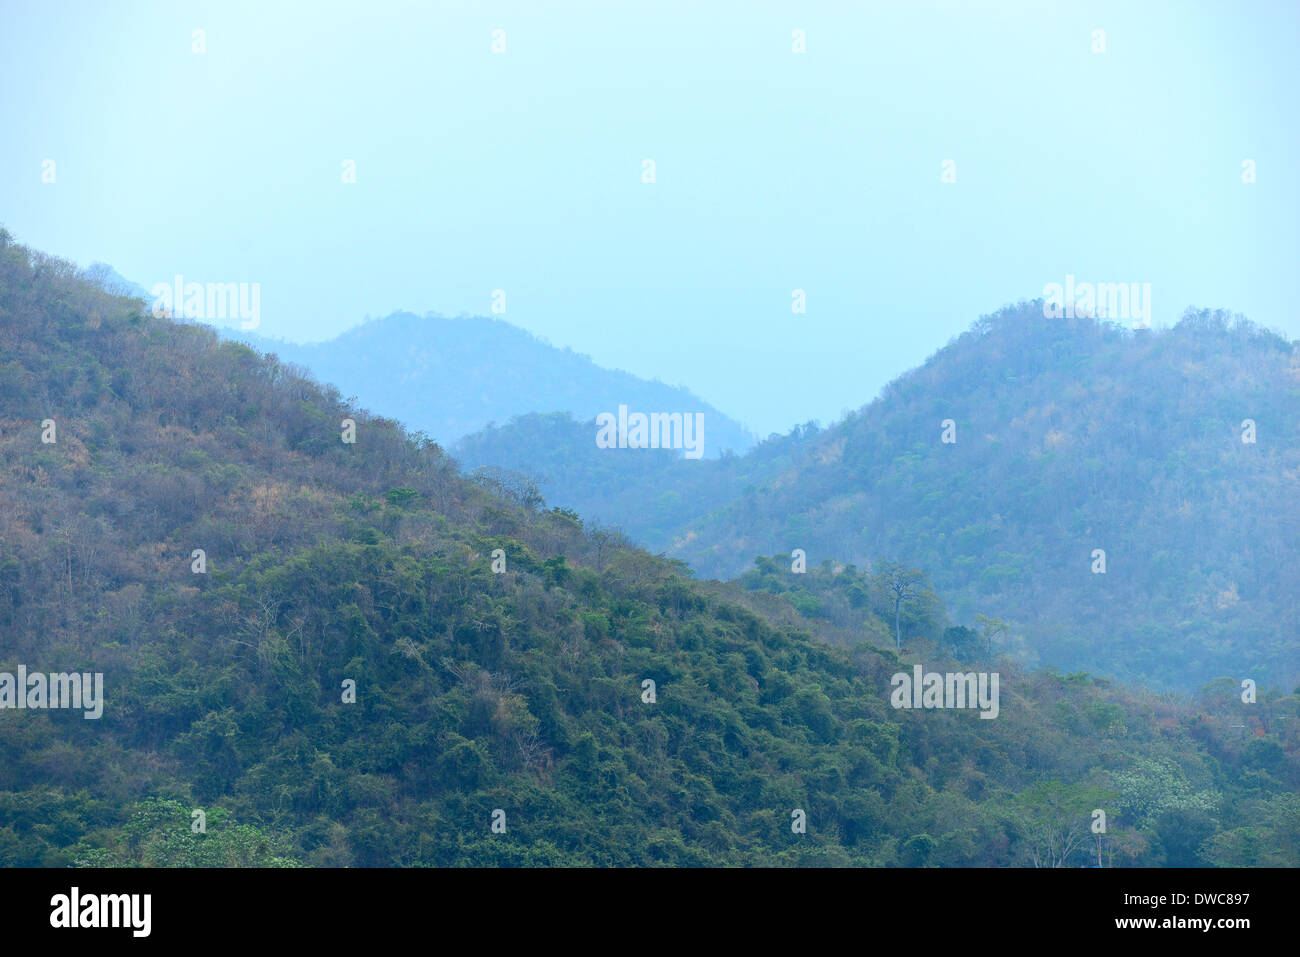 rain forest on mountain Stock Photo